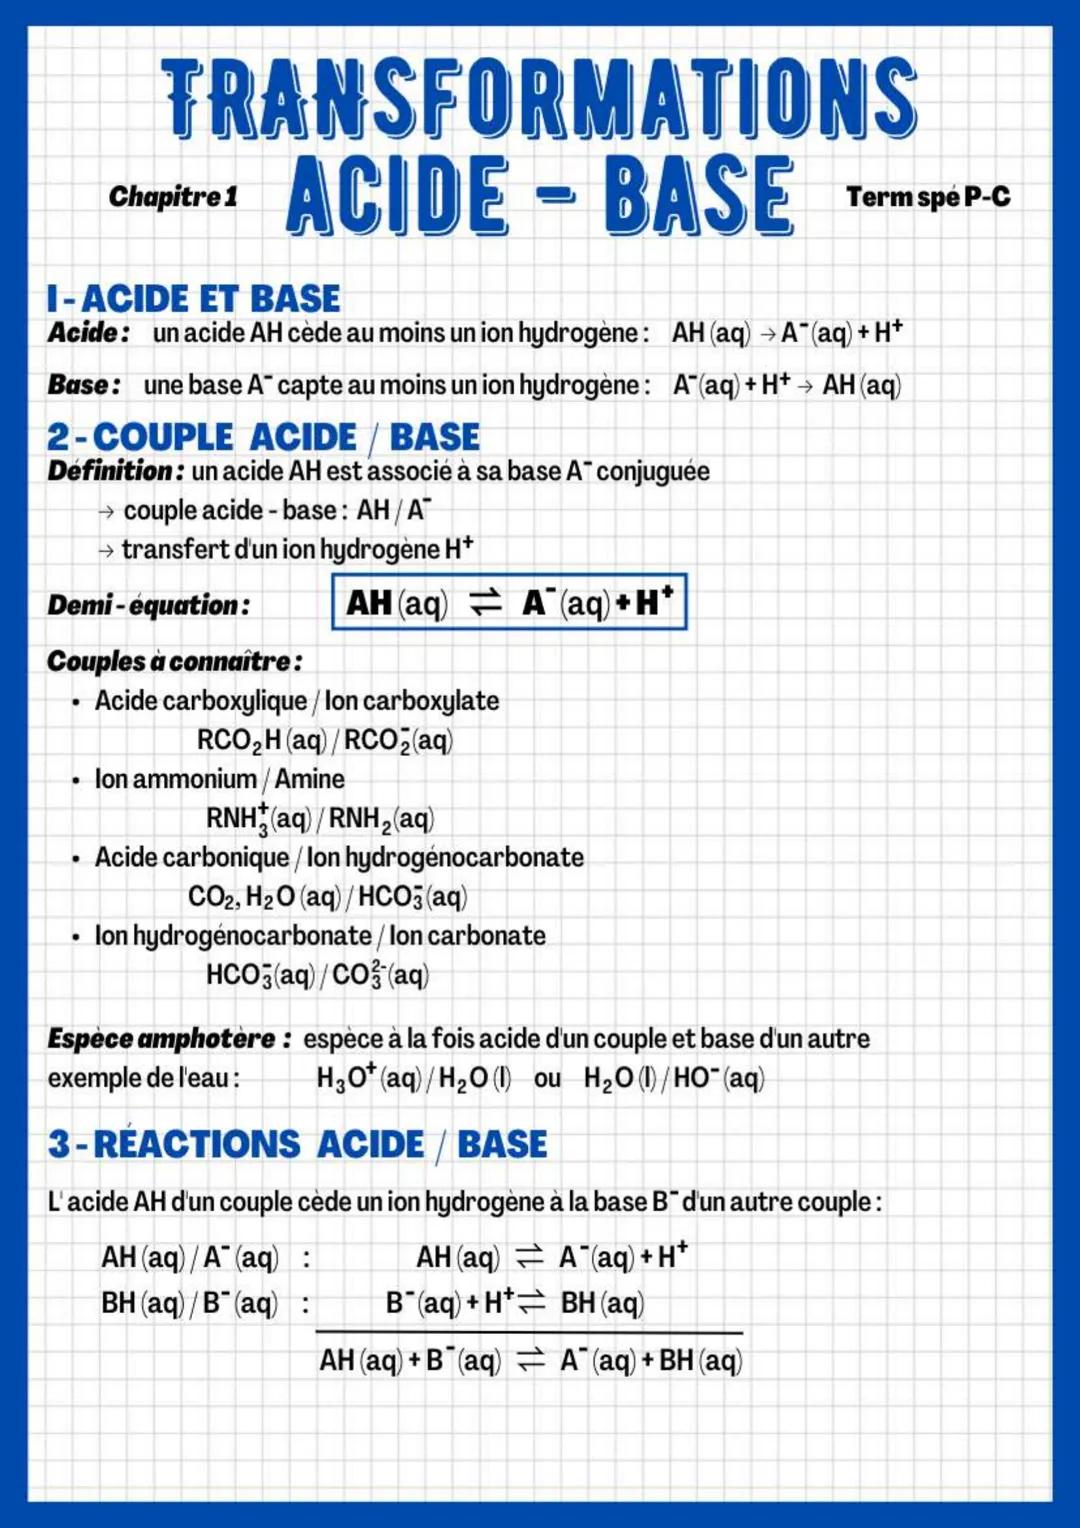 TRANSFORMATIONS
ACIDE - BASE
●
Chapitre 1
I-ACIDE ET BASE
Acide: un acide AH cède au moins un ion hydrogène: AH (aq) → A*(aq) + H+
Base: une